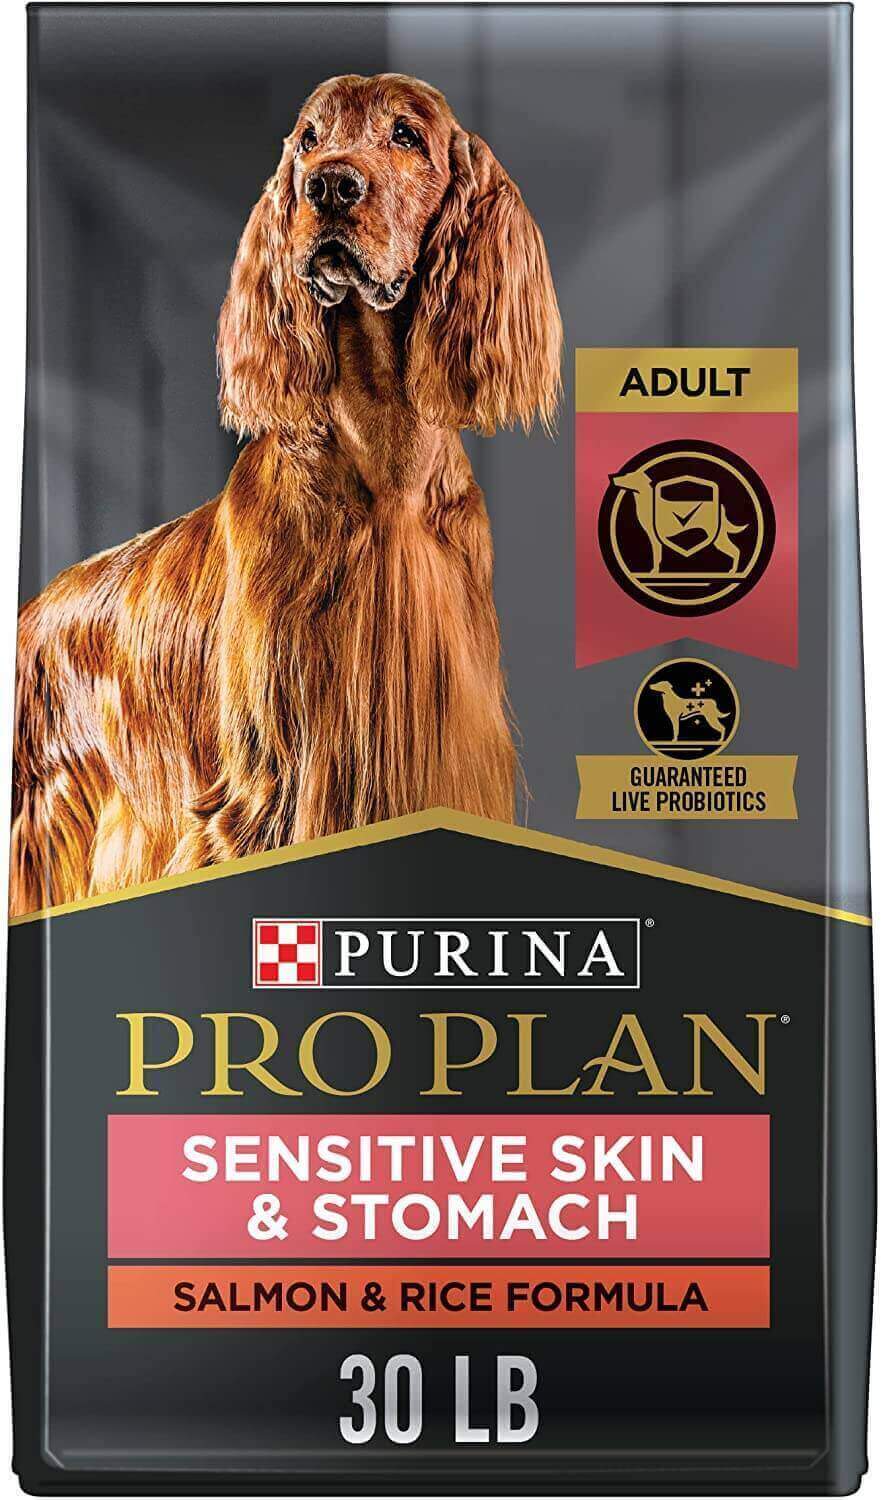 purina pro plan sensitive skin dry dog food amazon coupons deals